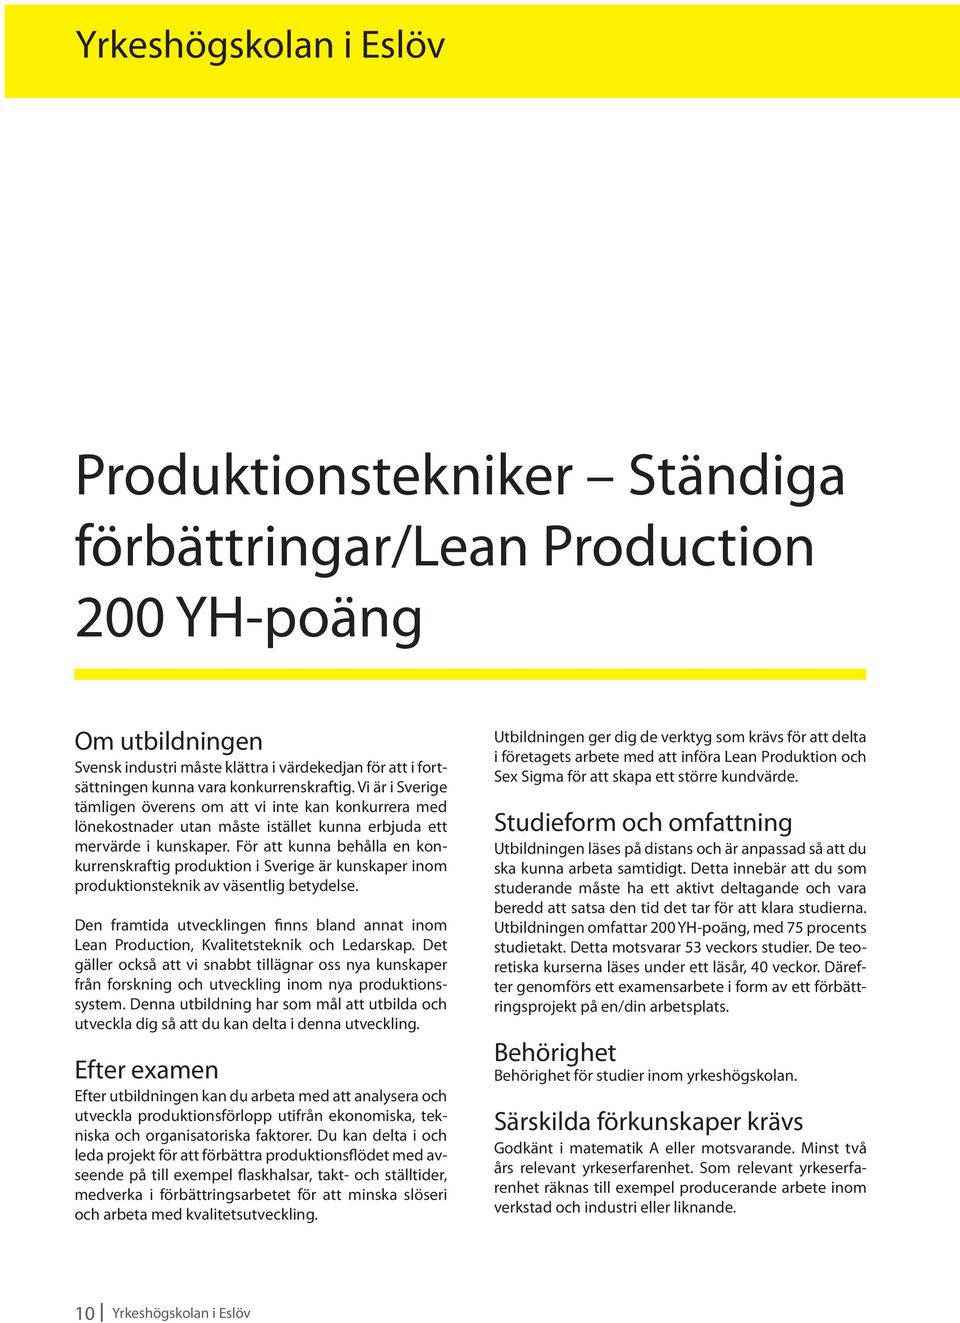 För att kunna behålla en konkurrenskraftig produktion i Sverige är kunskaper inom produktionsteknik av väsentlig betydelse.